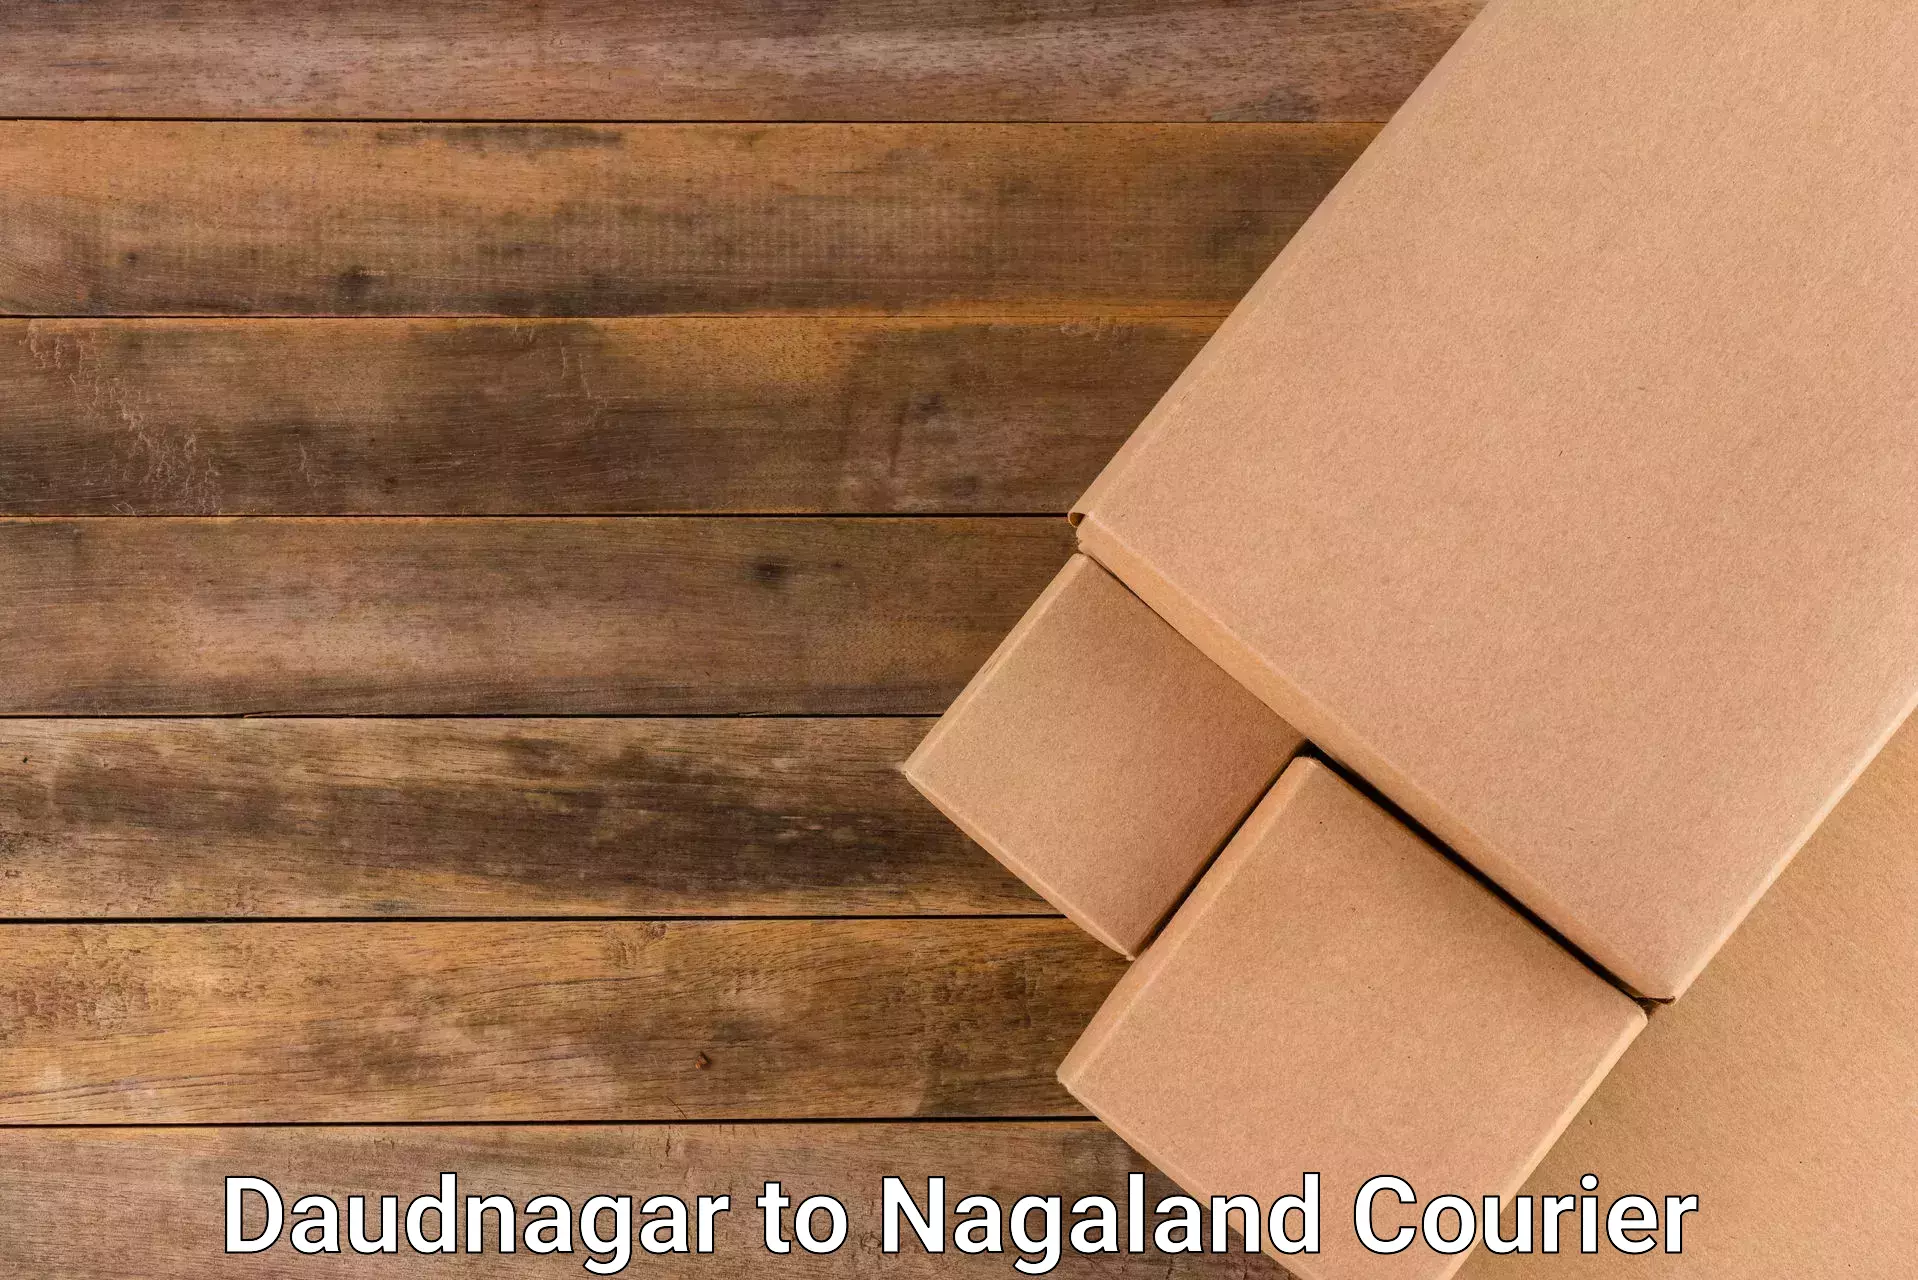 Express delivery network Daudnagar to NIT Nagaland